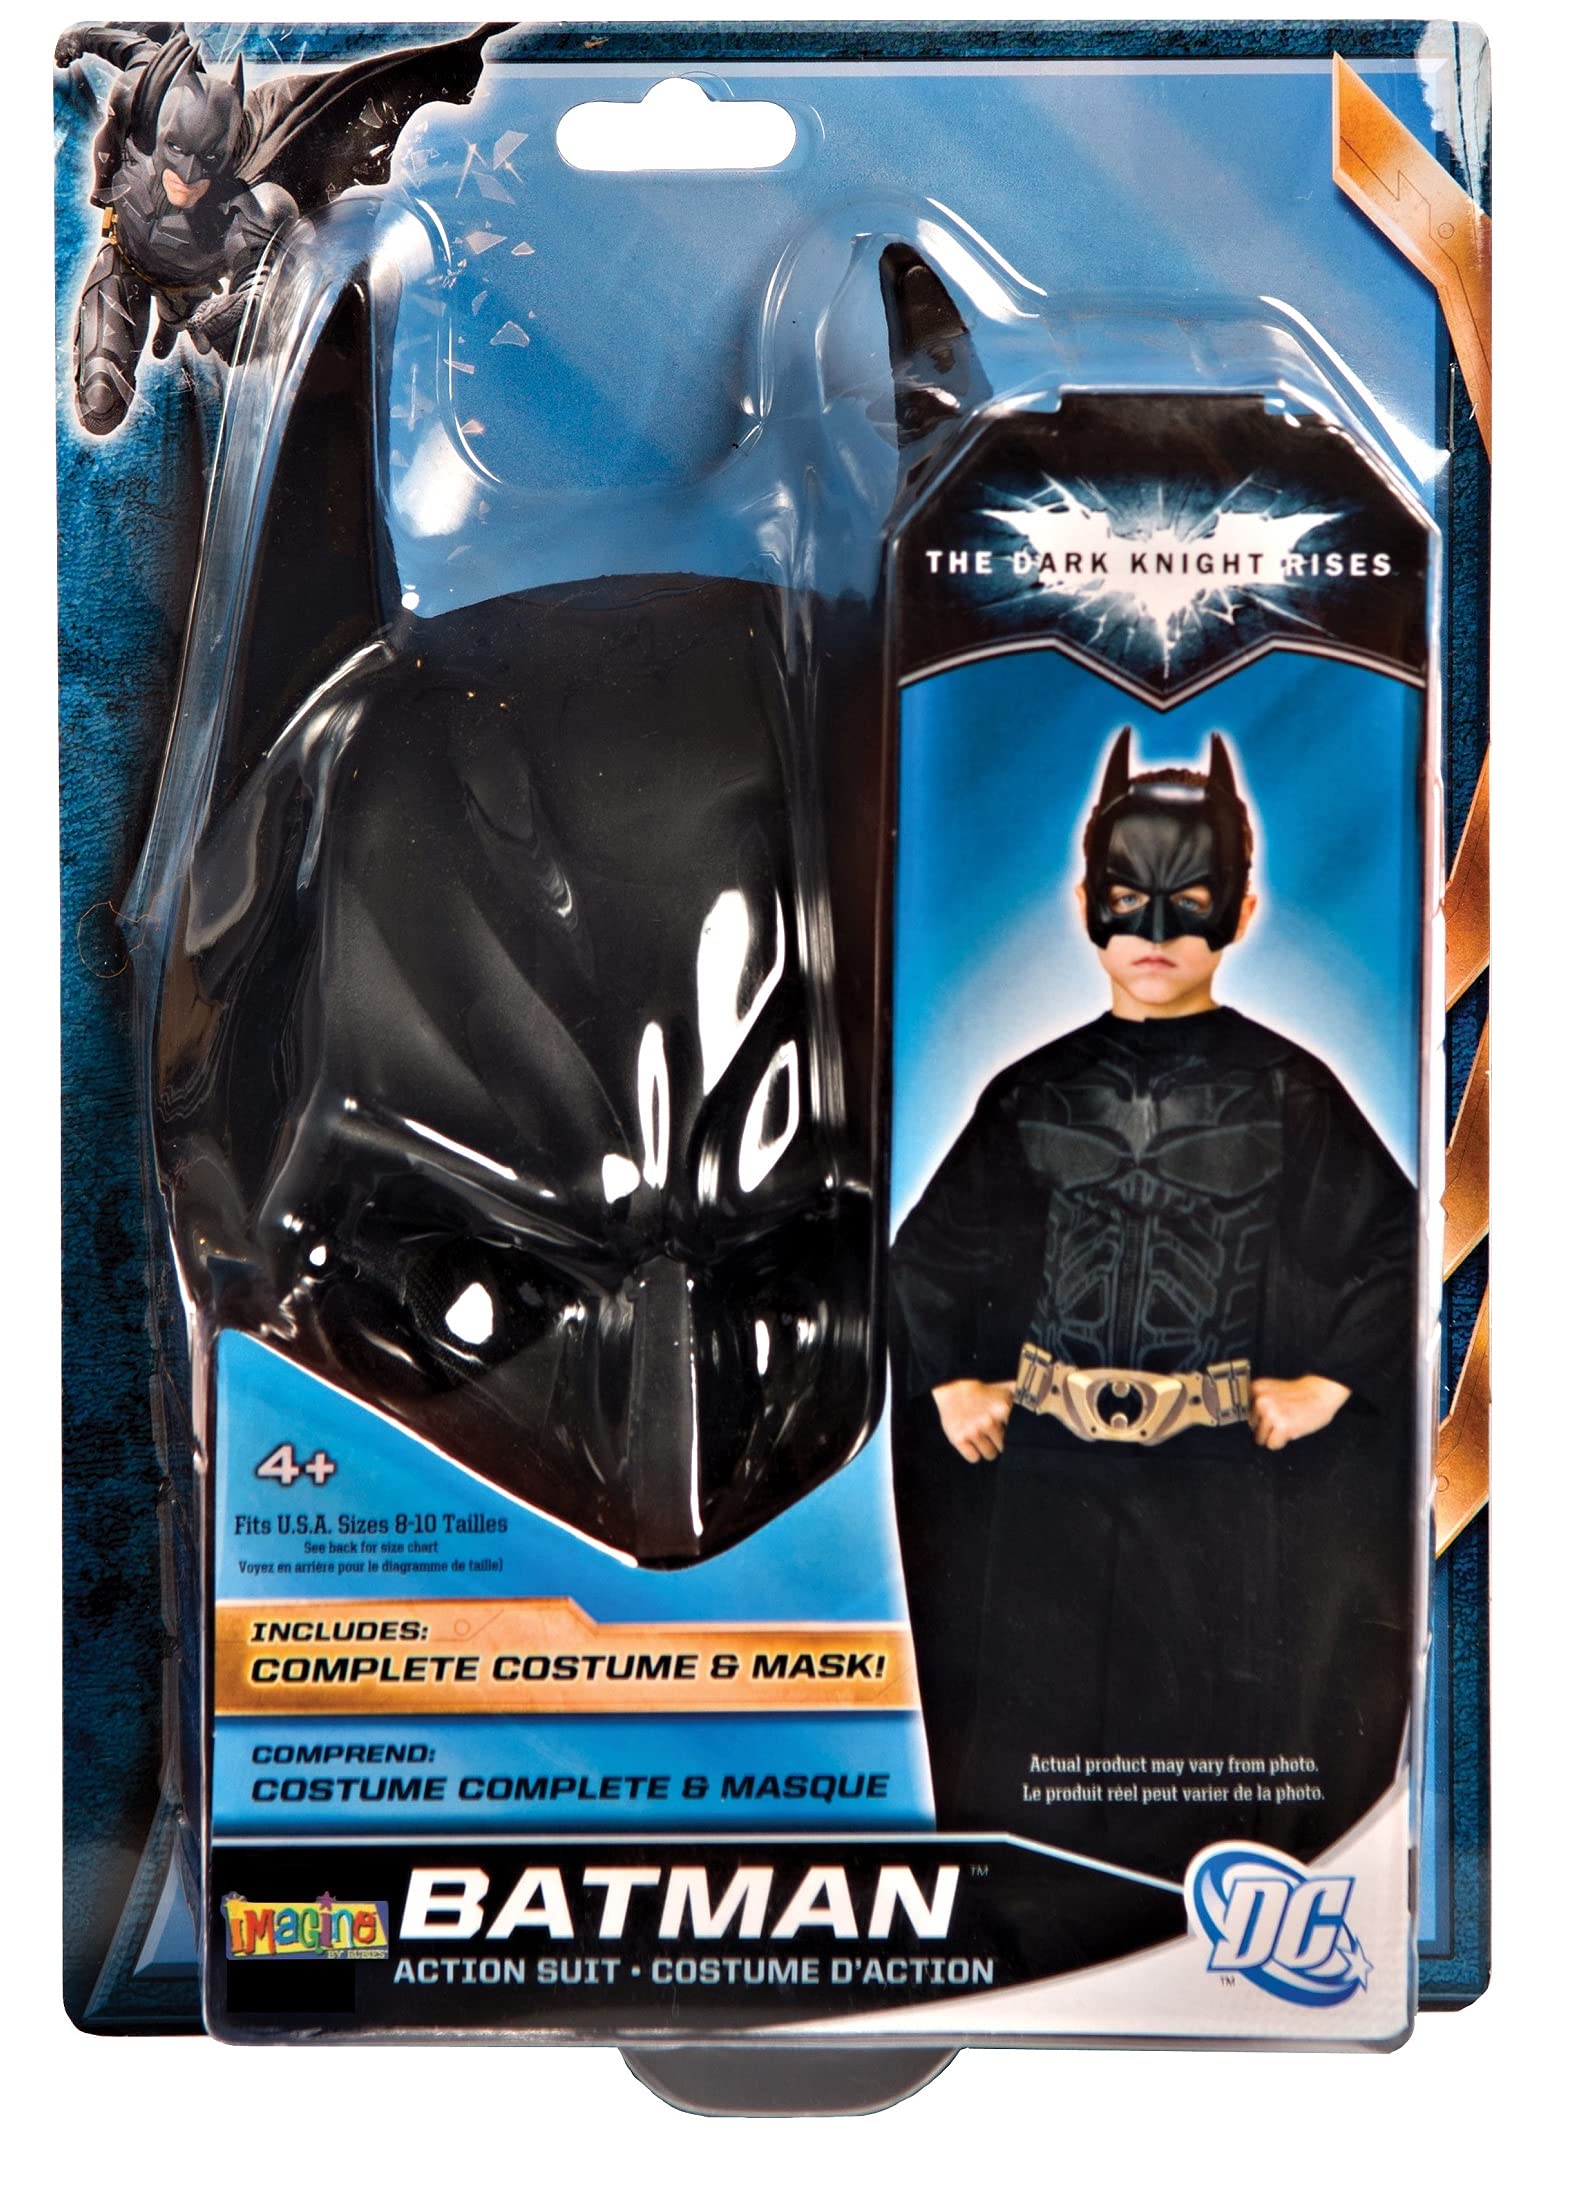 Batman Action Suit Set Costume for Kids